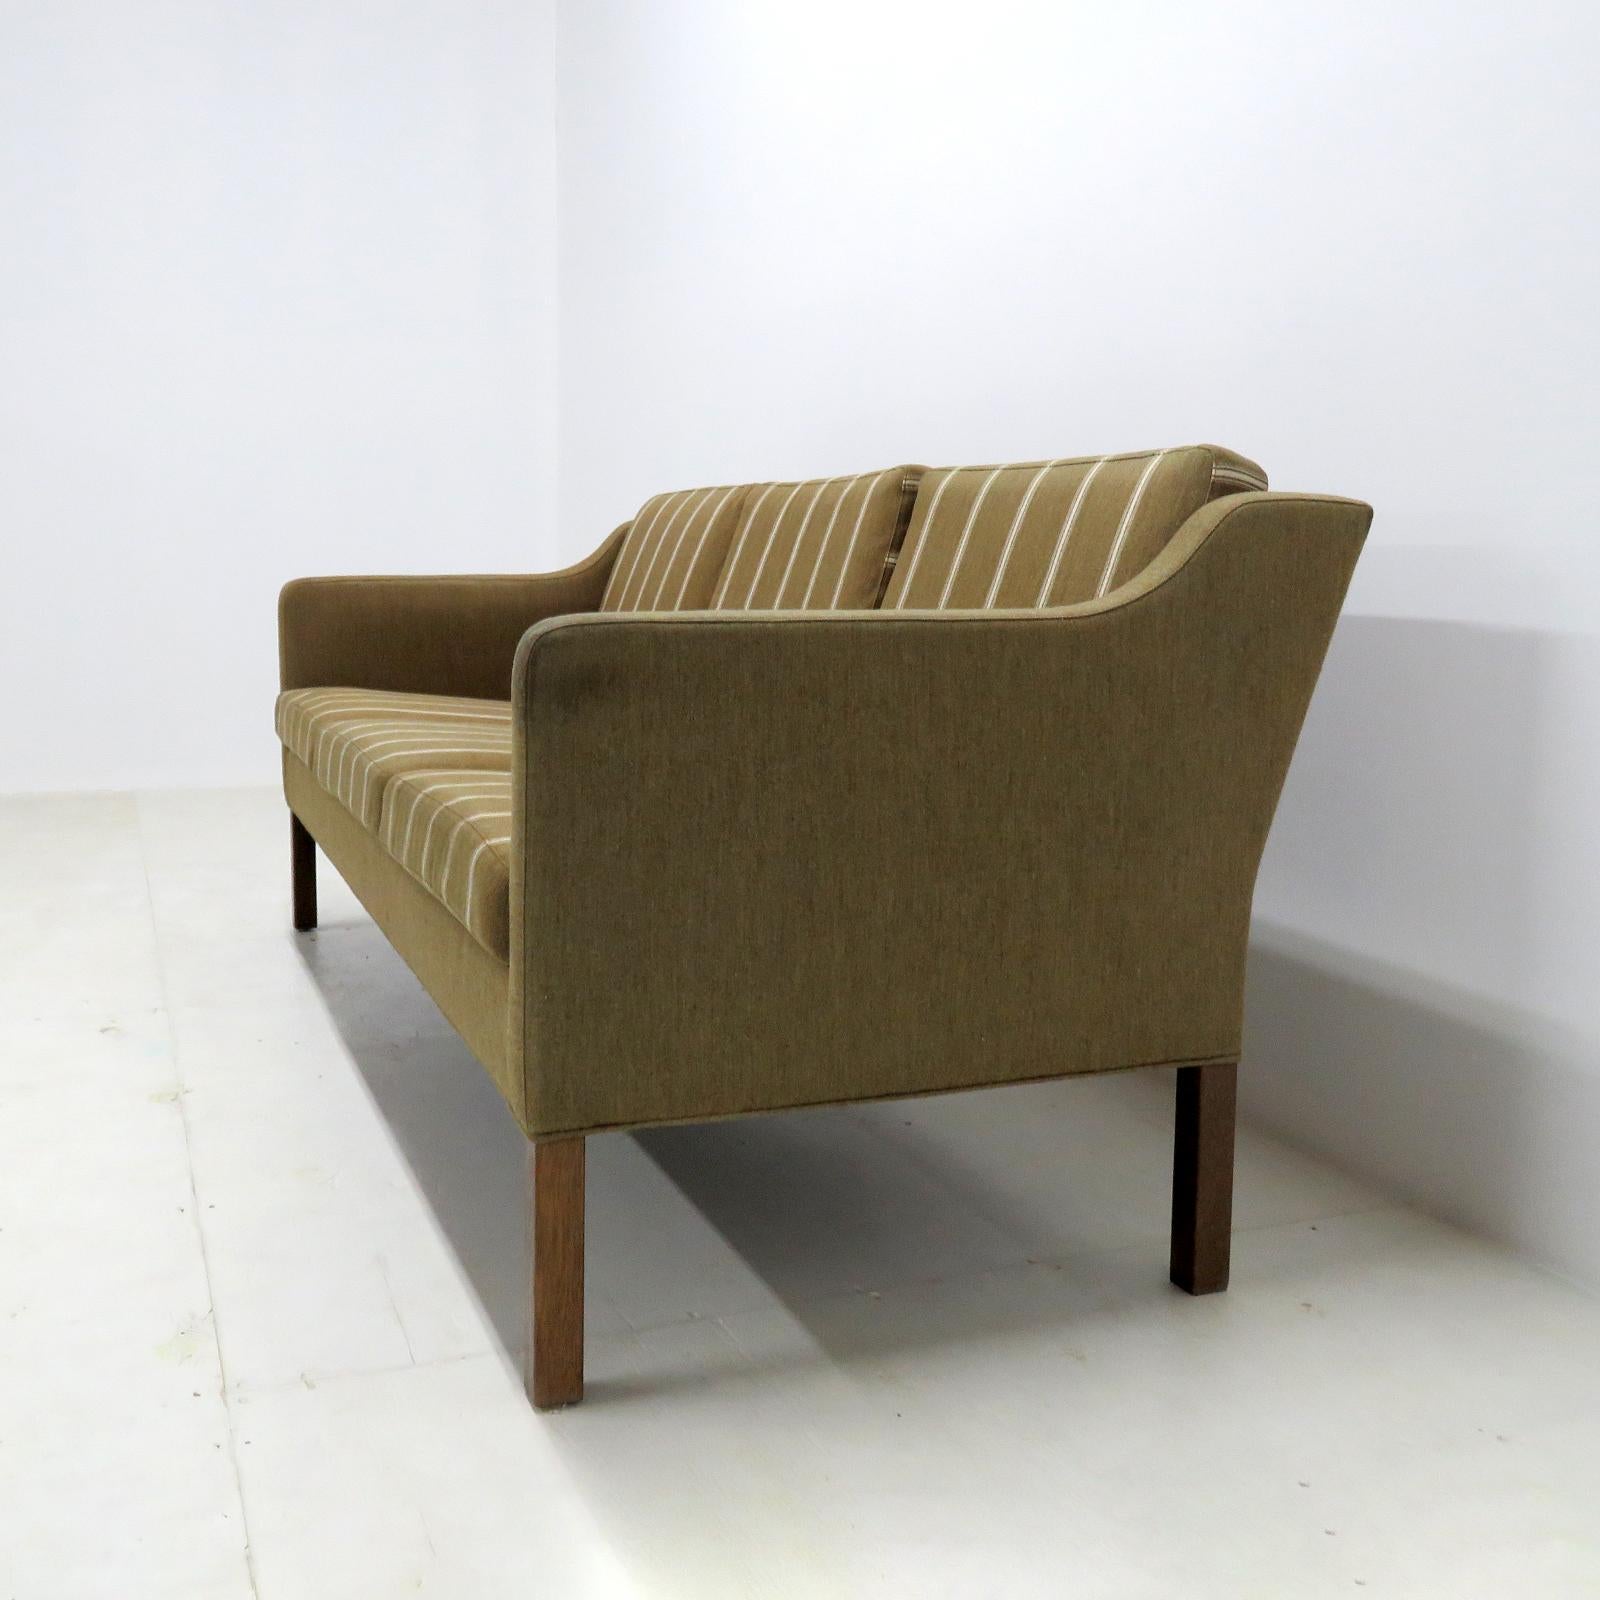 Børge Mogensen Modell #2223 Dreisitziges Sofa, 1960 (Gebeizt)